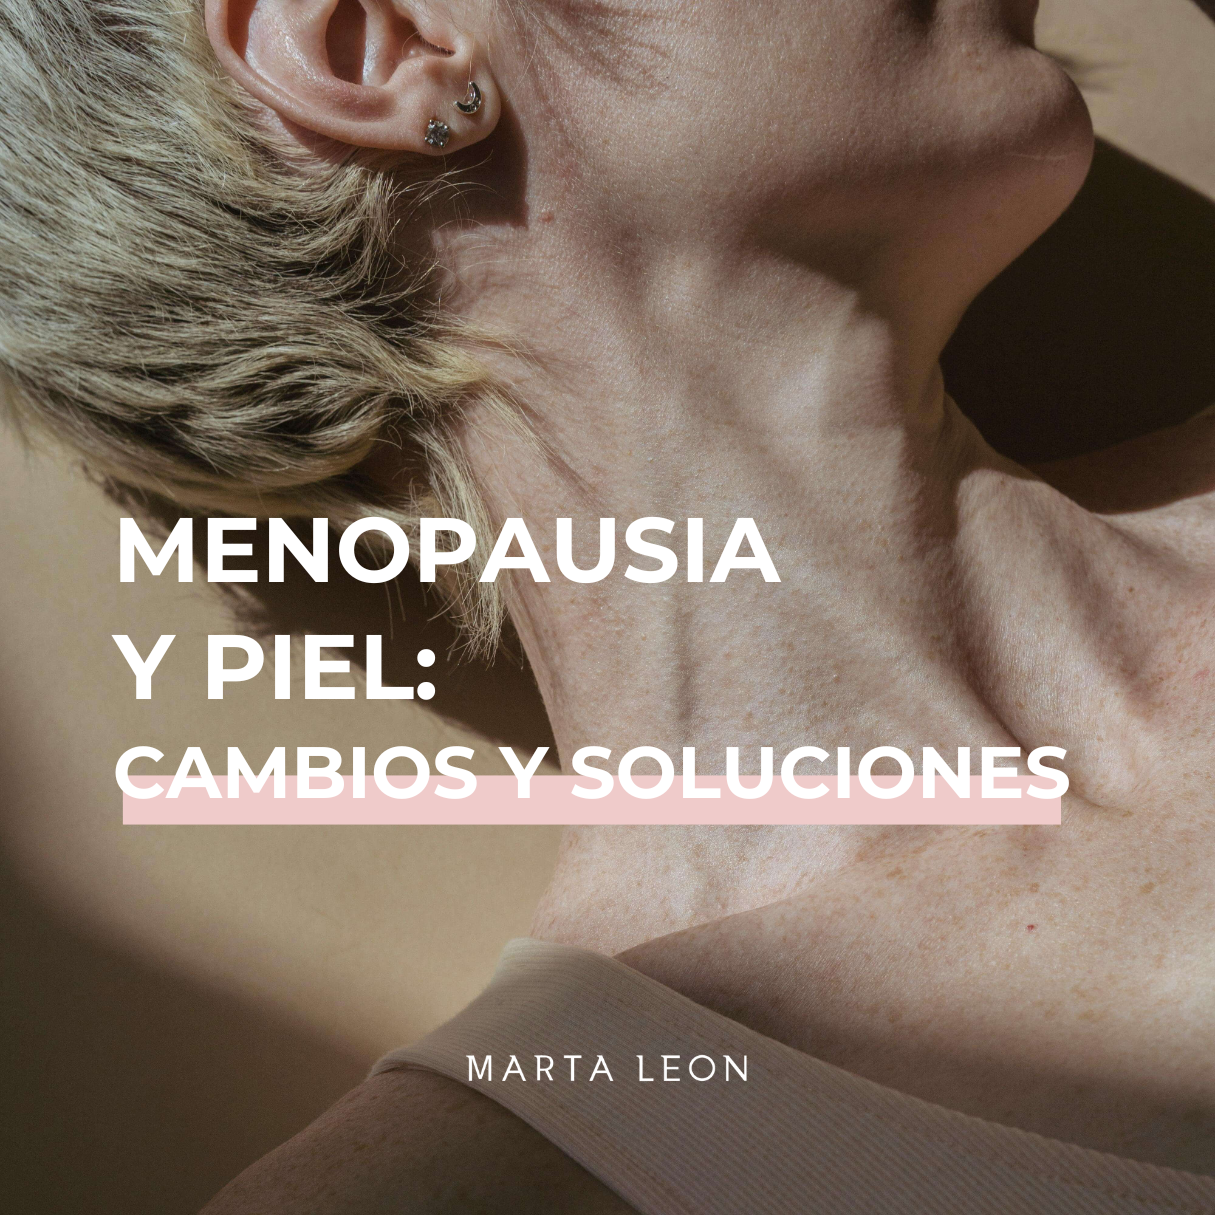 Menopausia y piel: cambios y soluciones